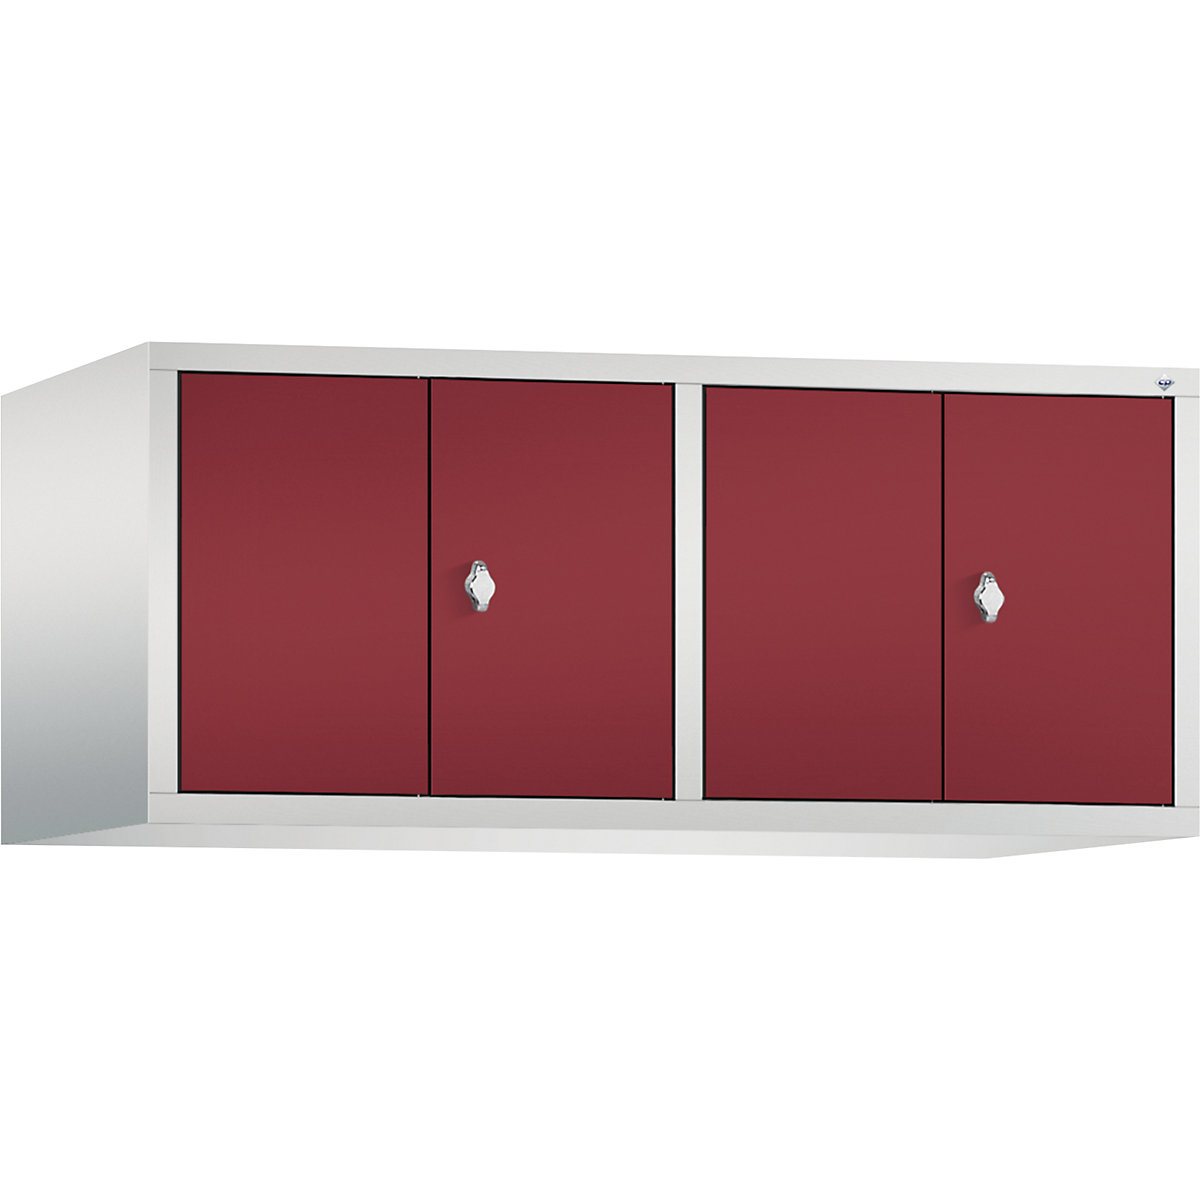 Altillo CLASSIC, puertas batientes que cierran al ras entre sí – C+P, 4 compartimentos, anchura de compartimento 300 mm, gris luminoso / rojo rubí